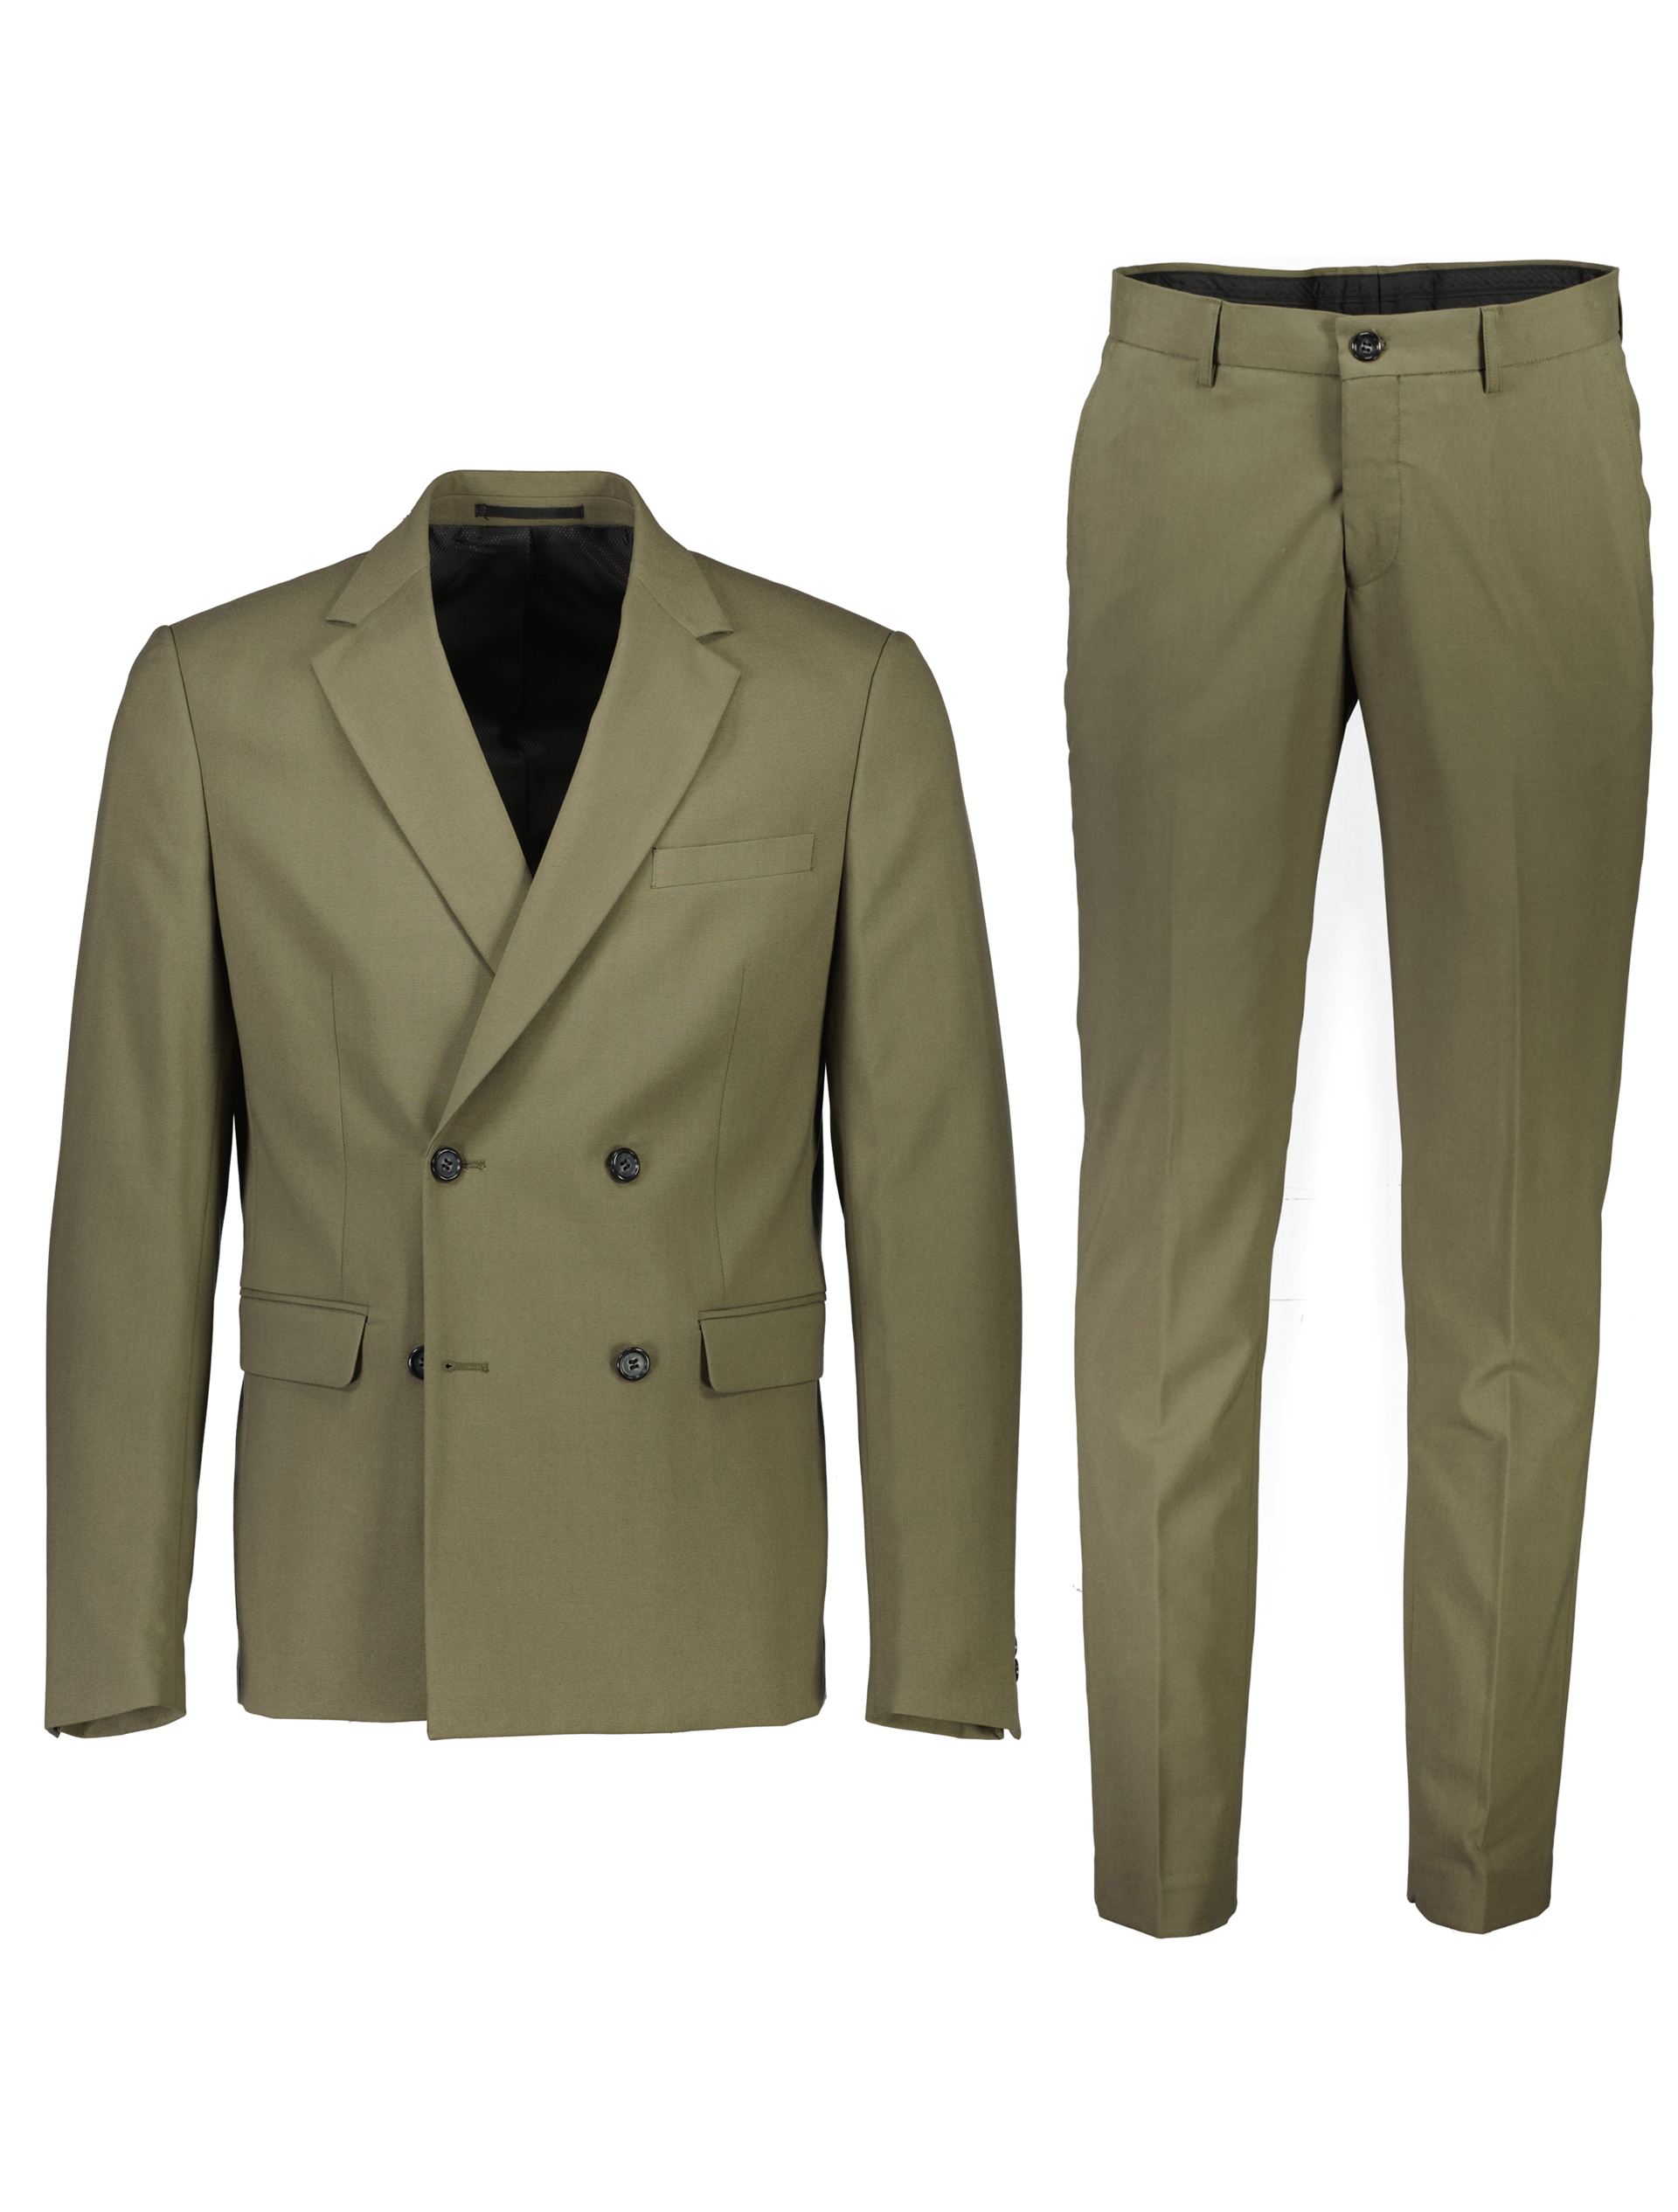 Lindbergh Suit green / olive